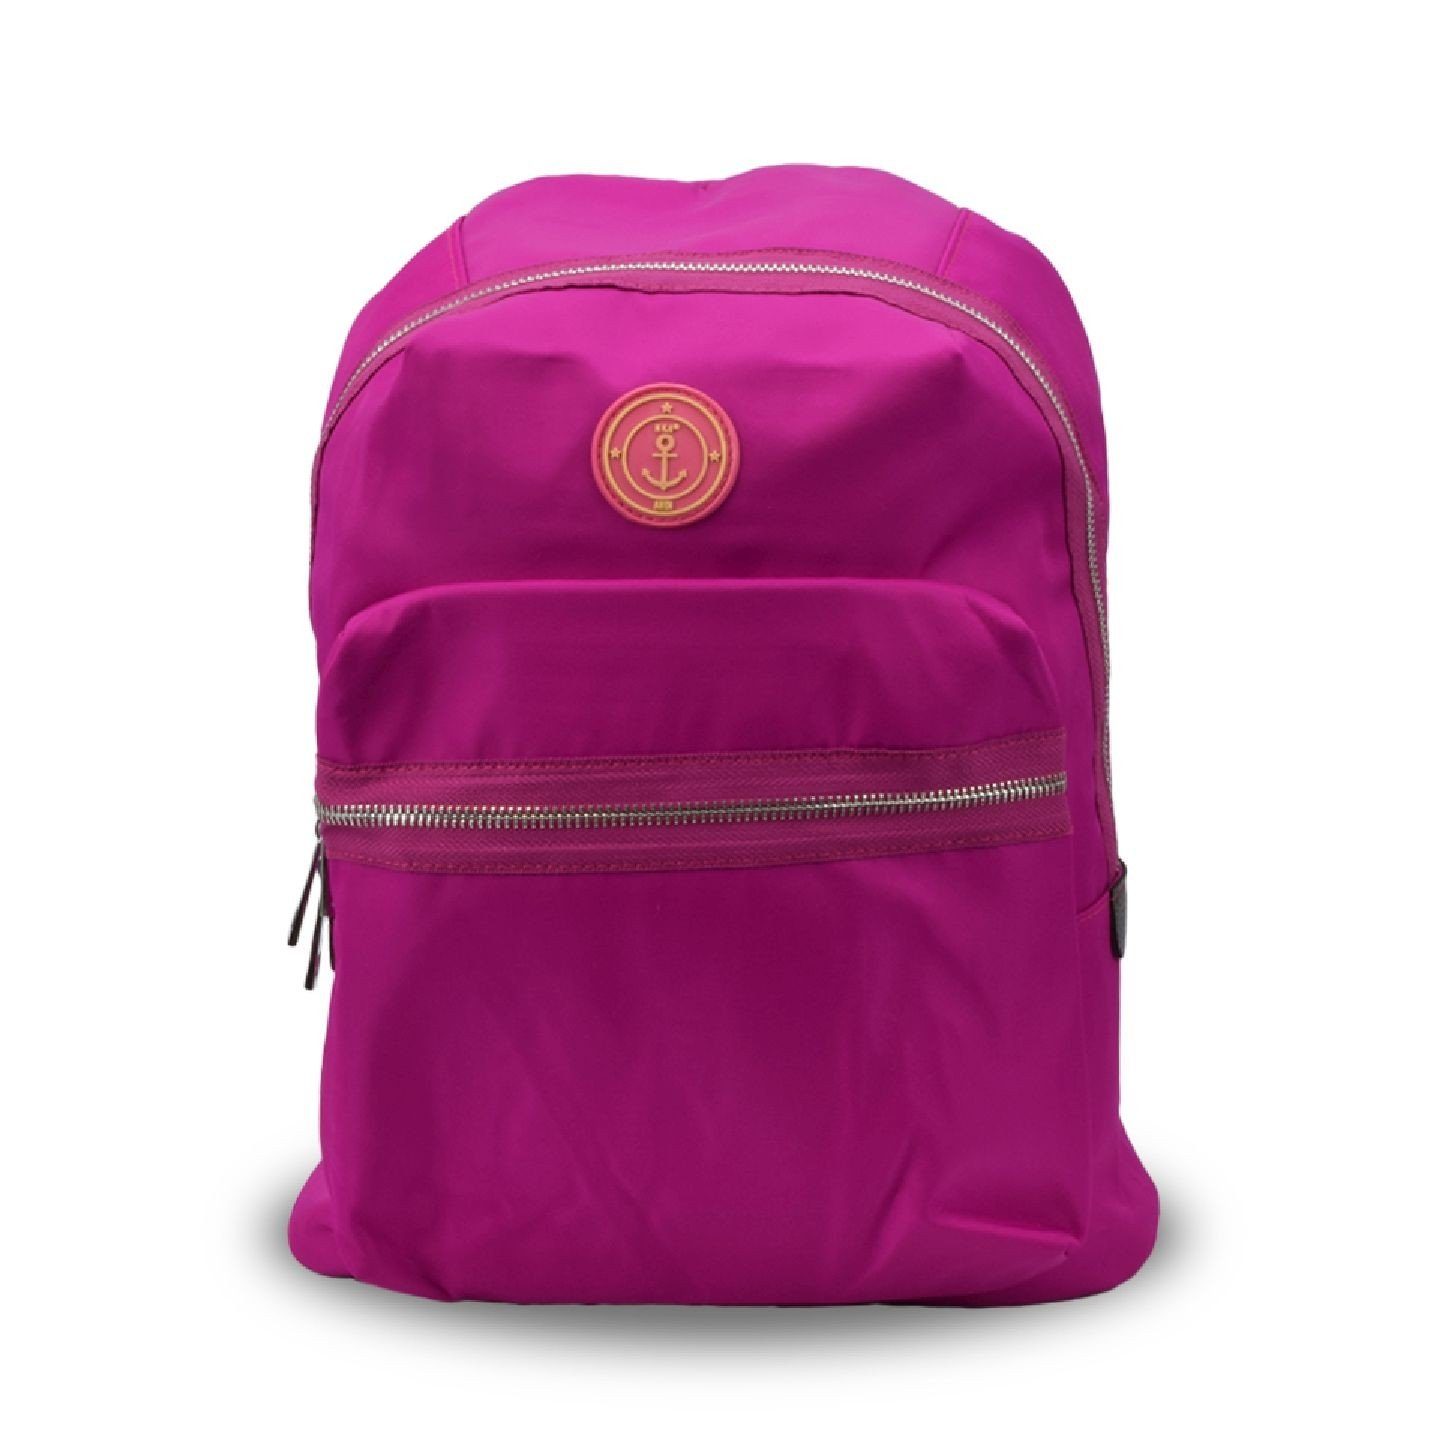 hochwertige Anker Sonia unifarben Fach Originelli Laptop Symbol Rucksack pink Verarbeitung Rucksack